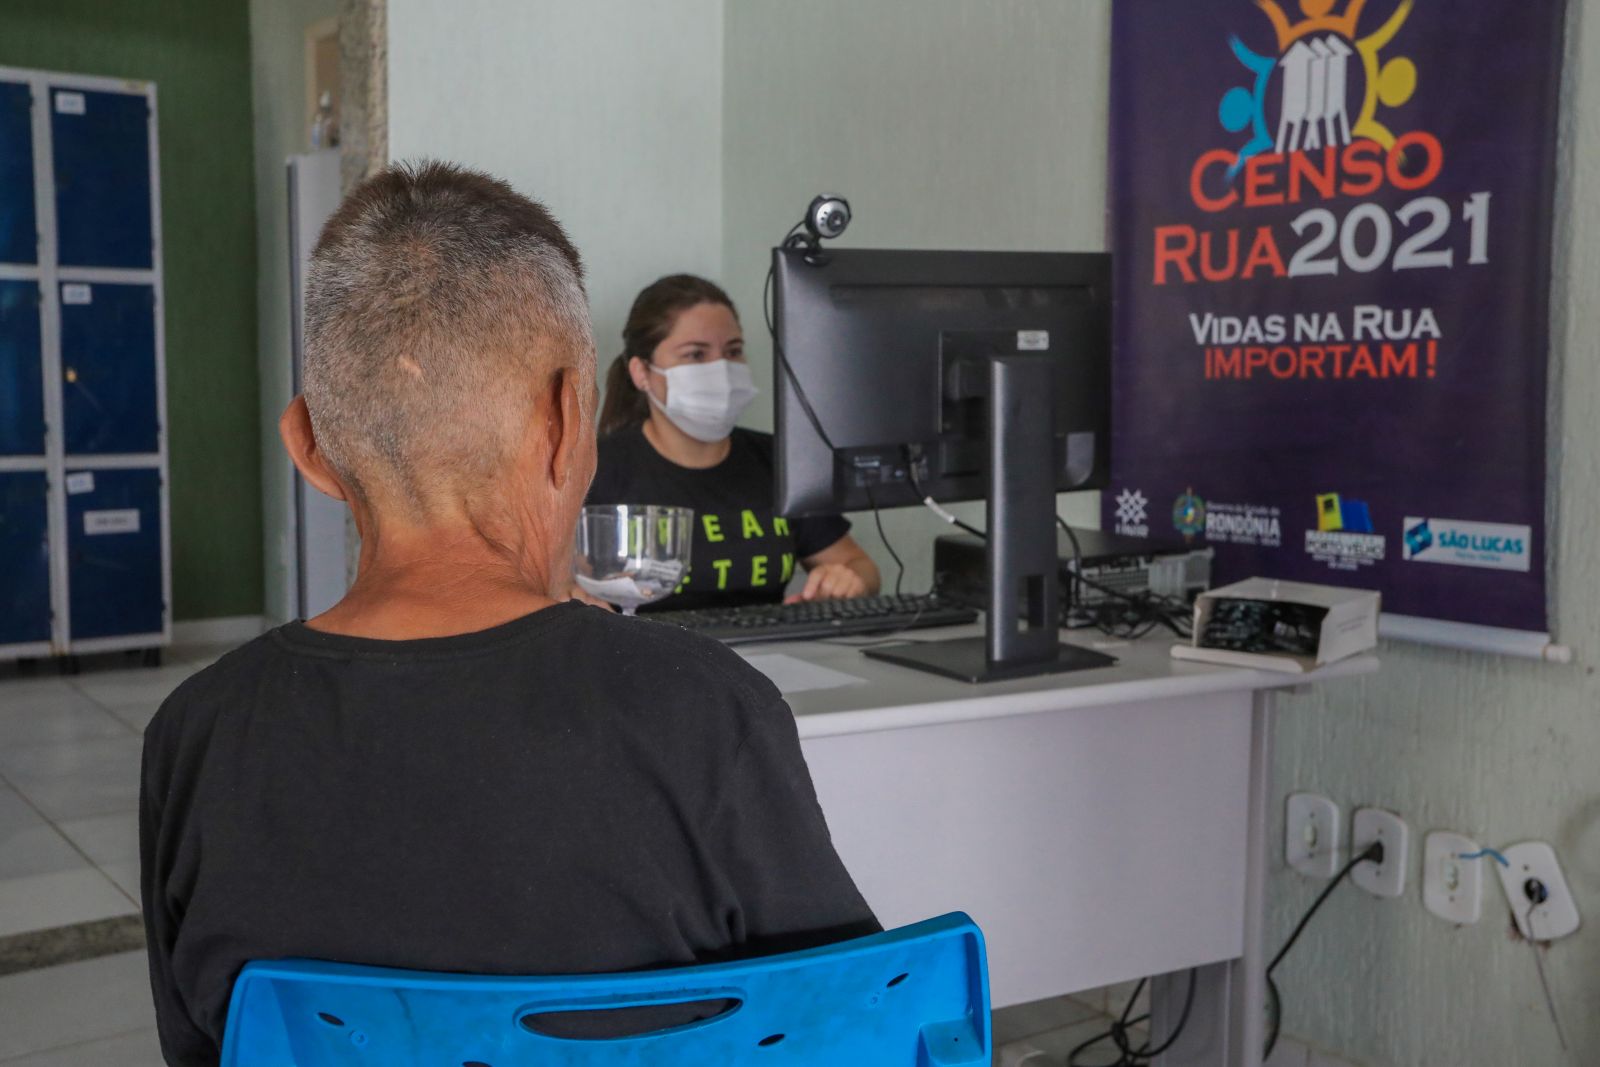 Porto Velho: Serviços de assistência foram levados à população em situação de vulnerabilidade e risco social